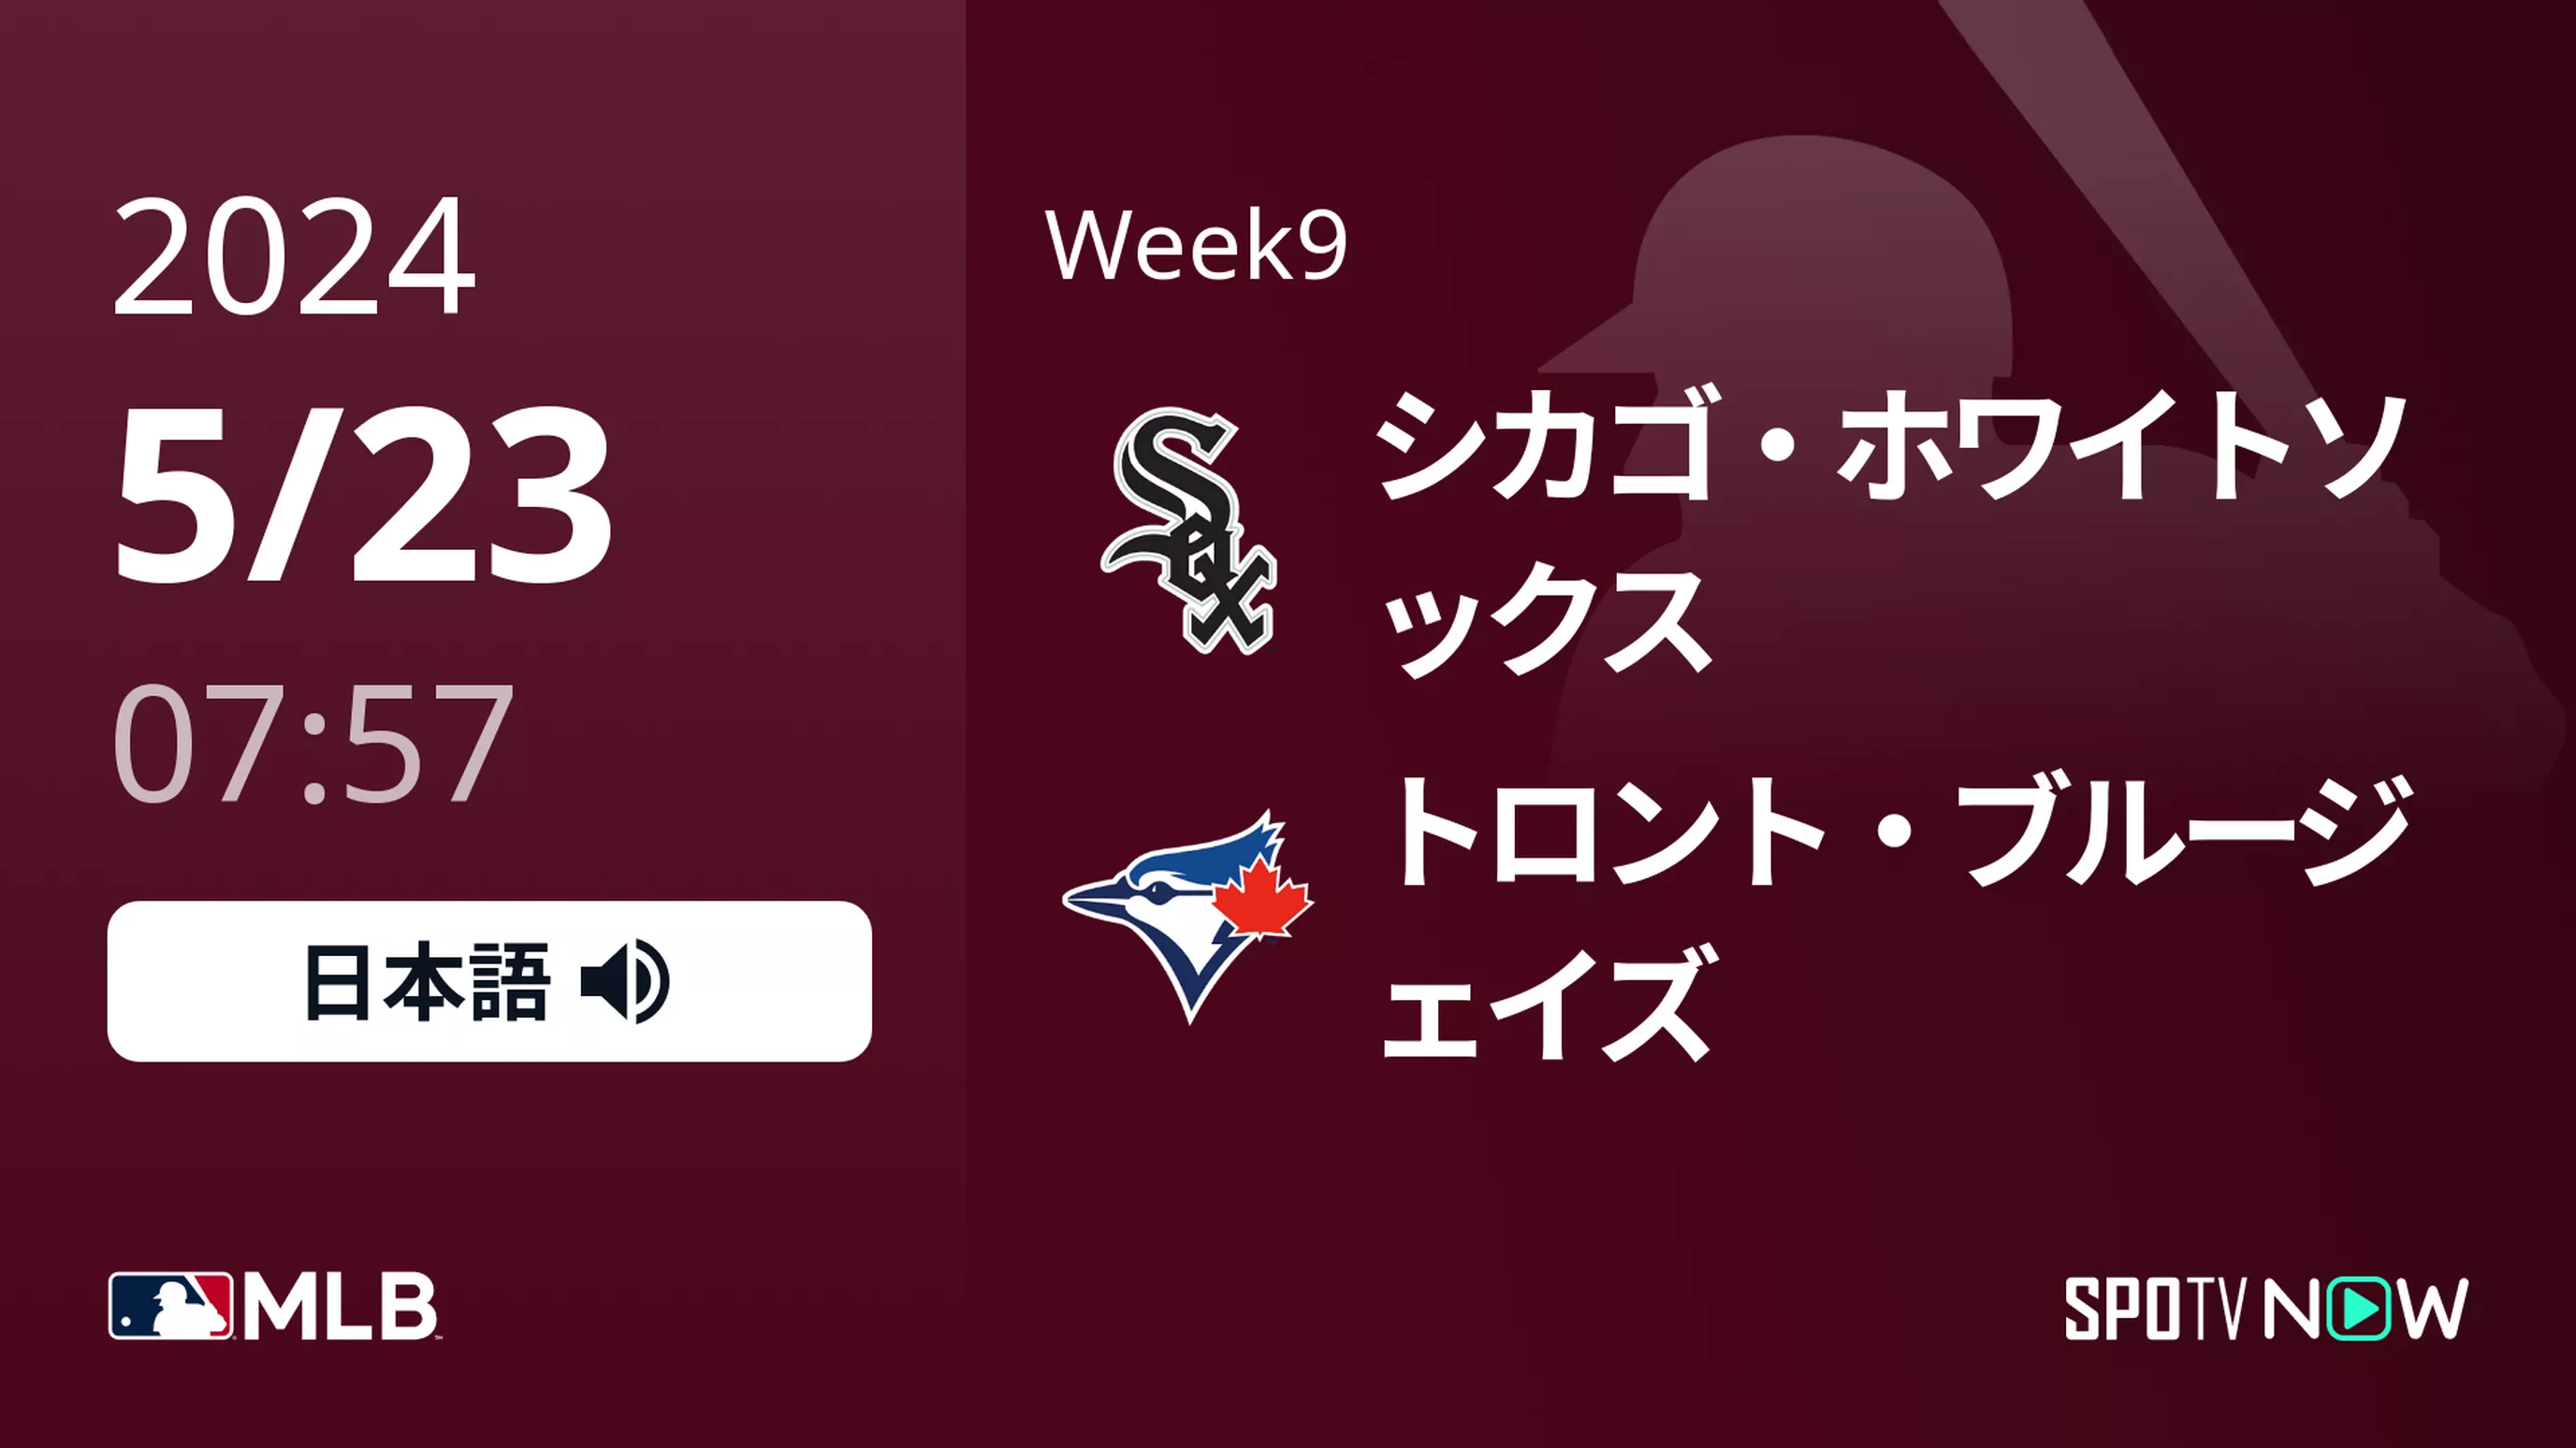 Week9 Wソックス vs ブルージェイズ 5/23[MLB]